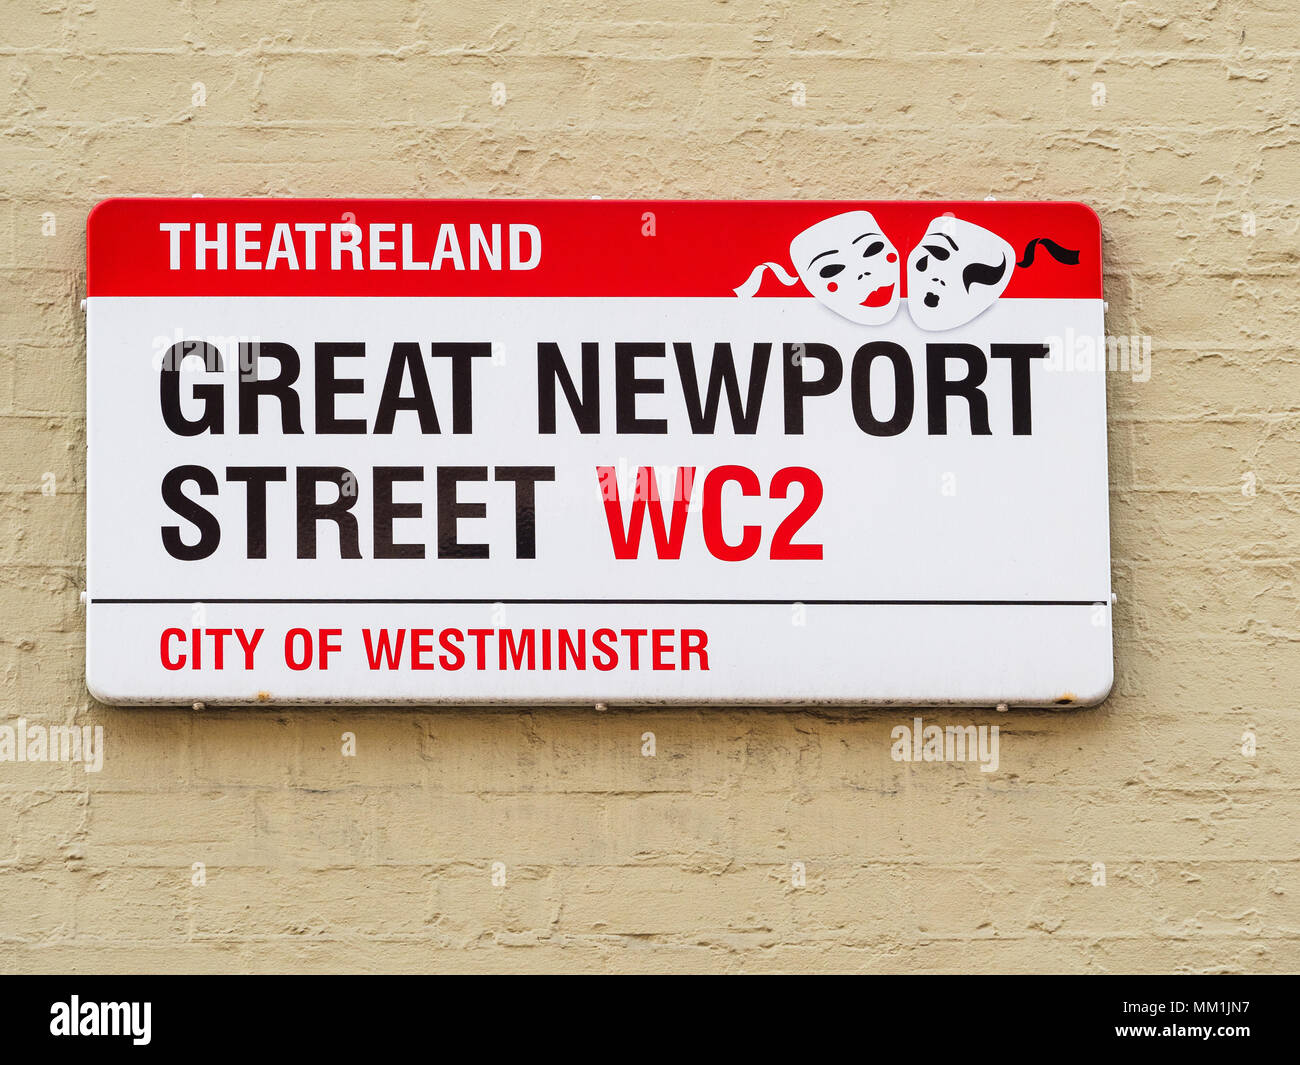 Die London Street signs - Tolle Newport Street im Londoner West End Viertel Stockfoto